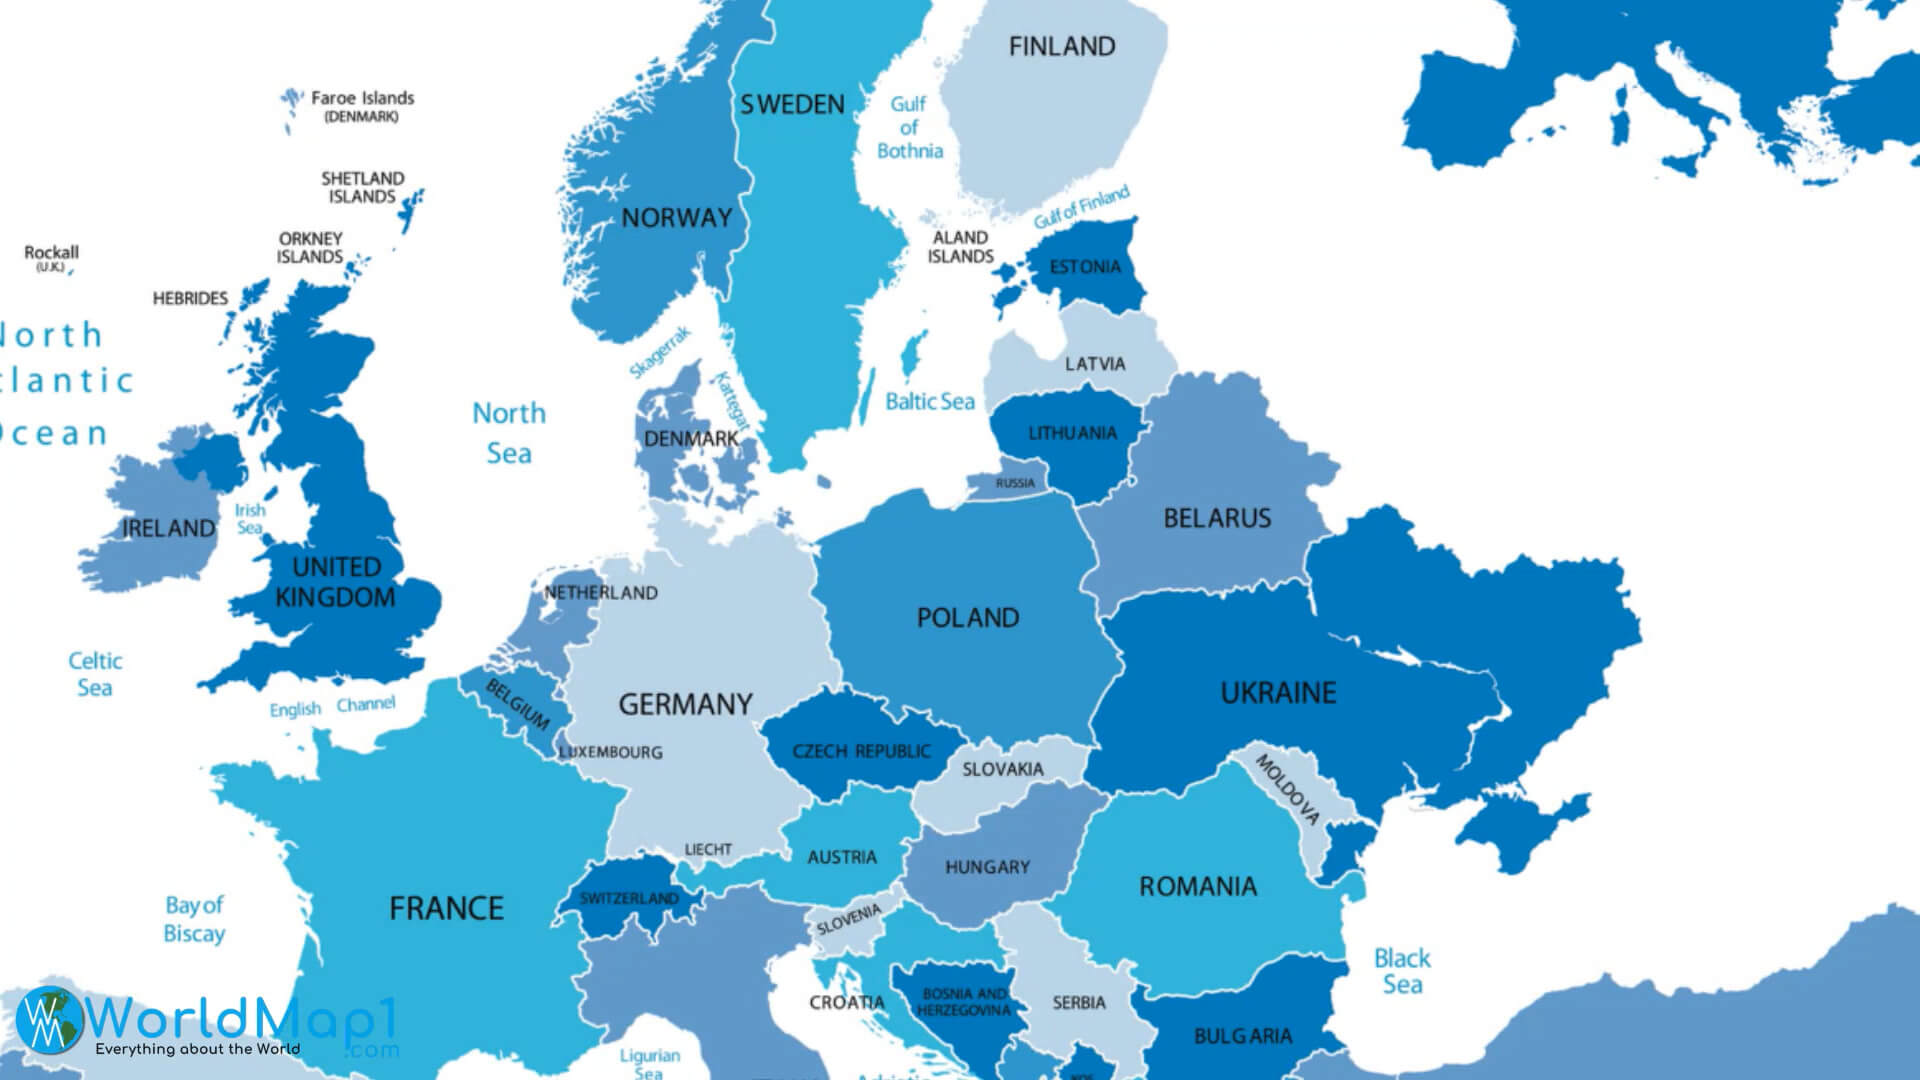 Estonia Map with European Countries